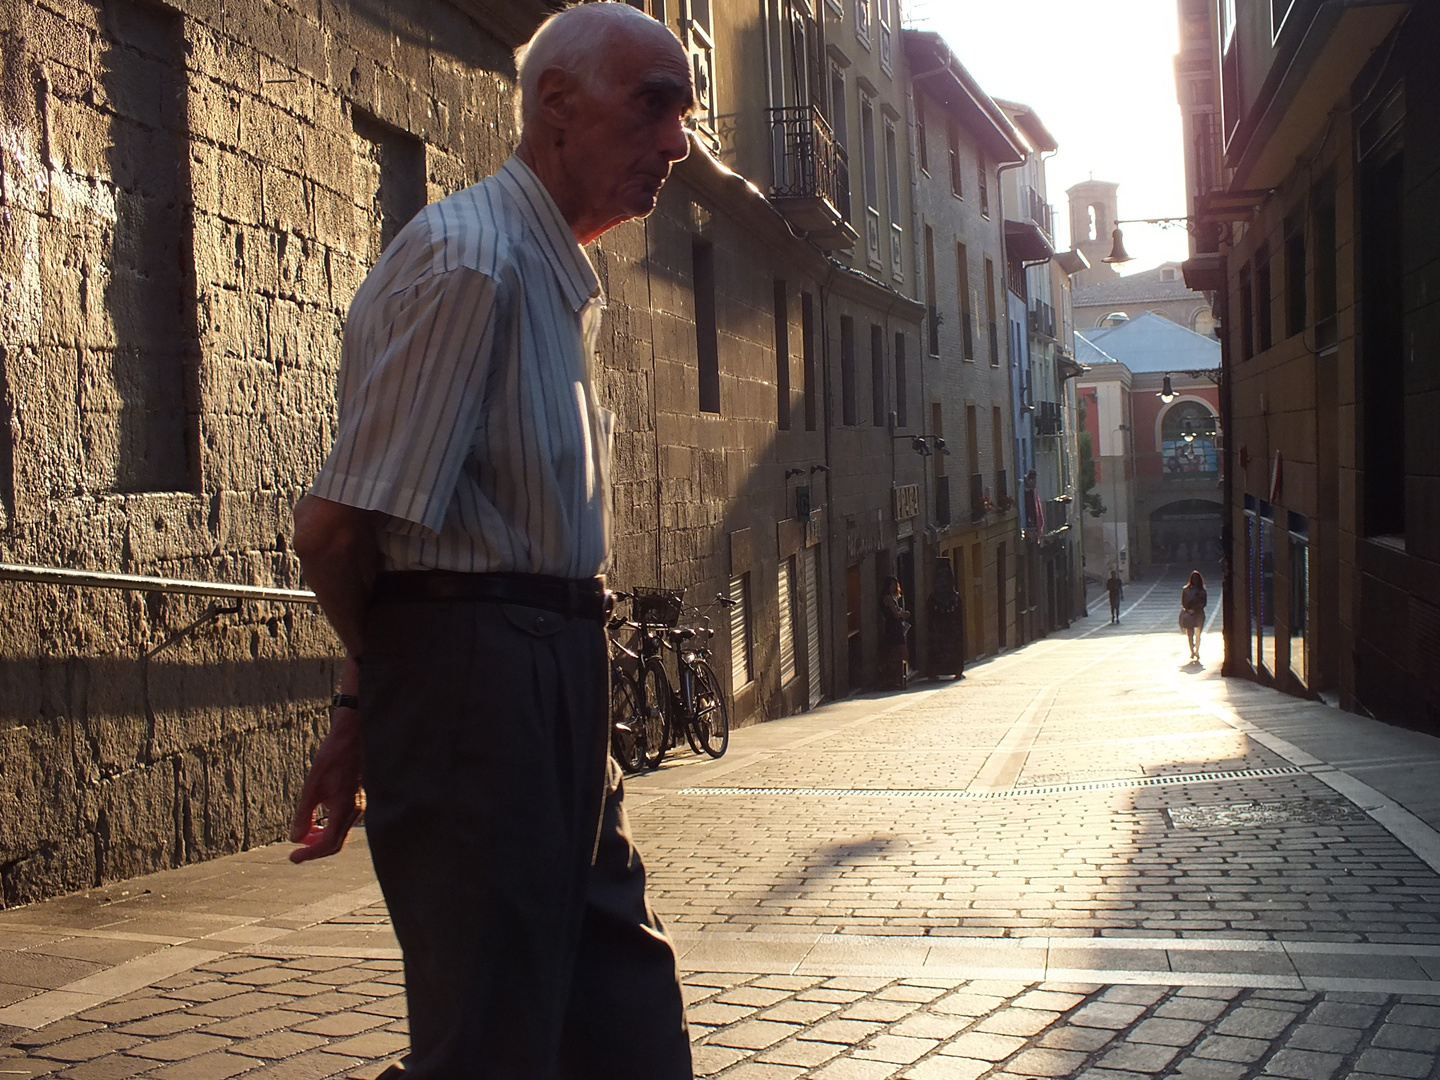 Old man walking